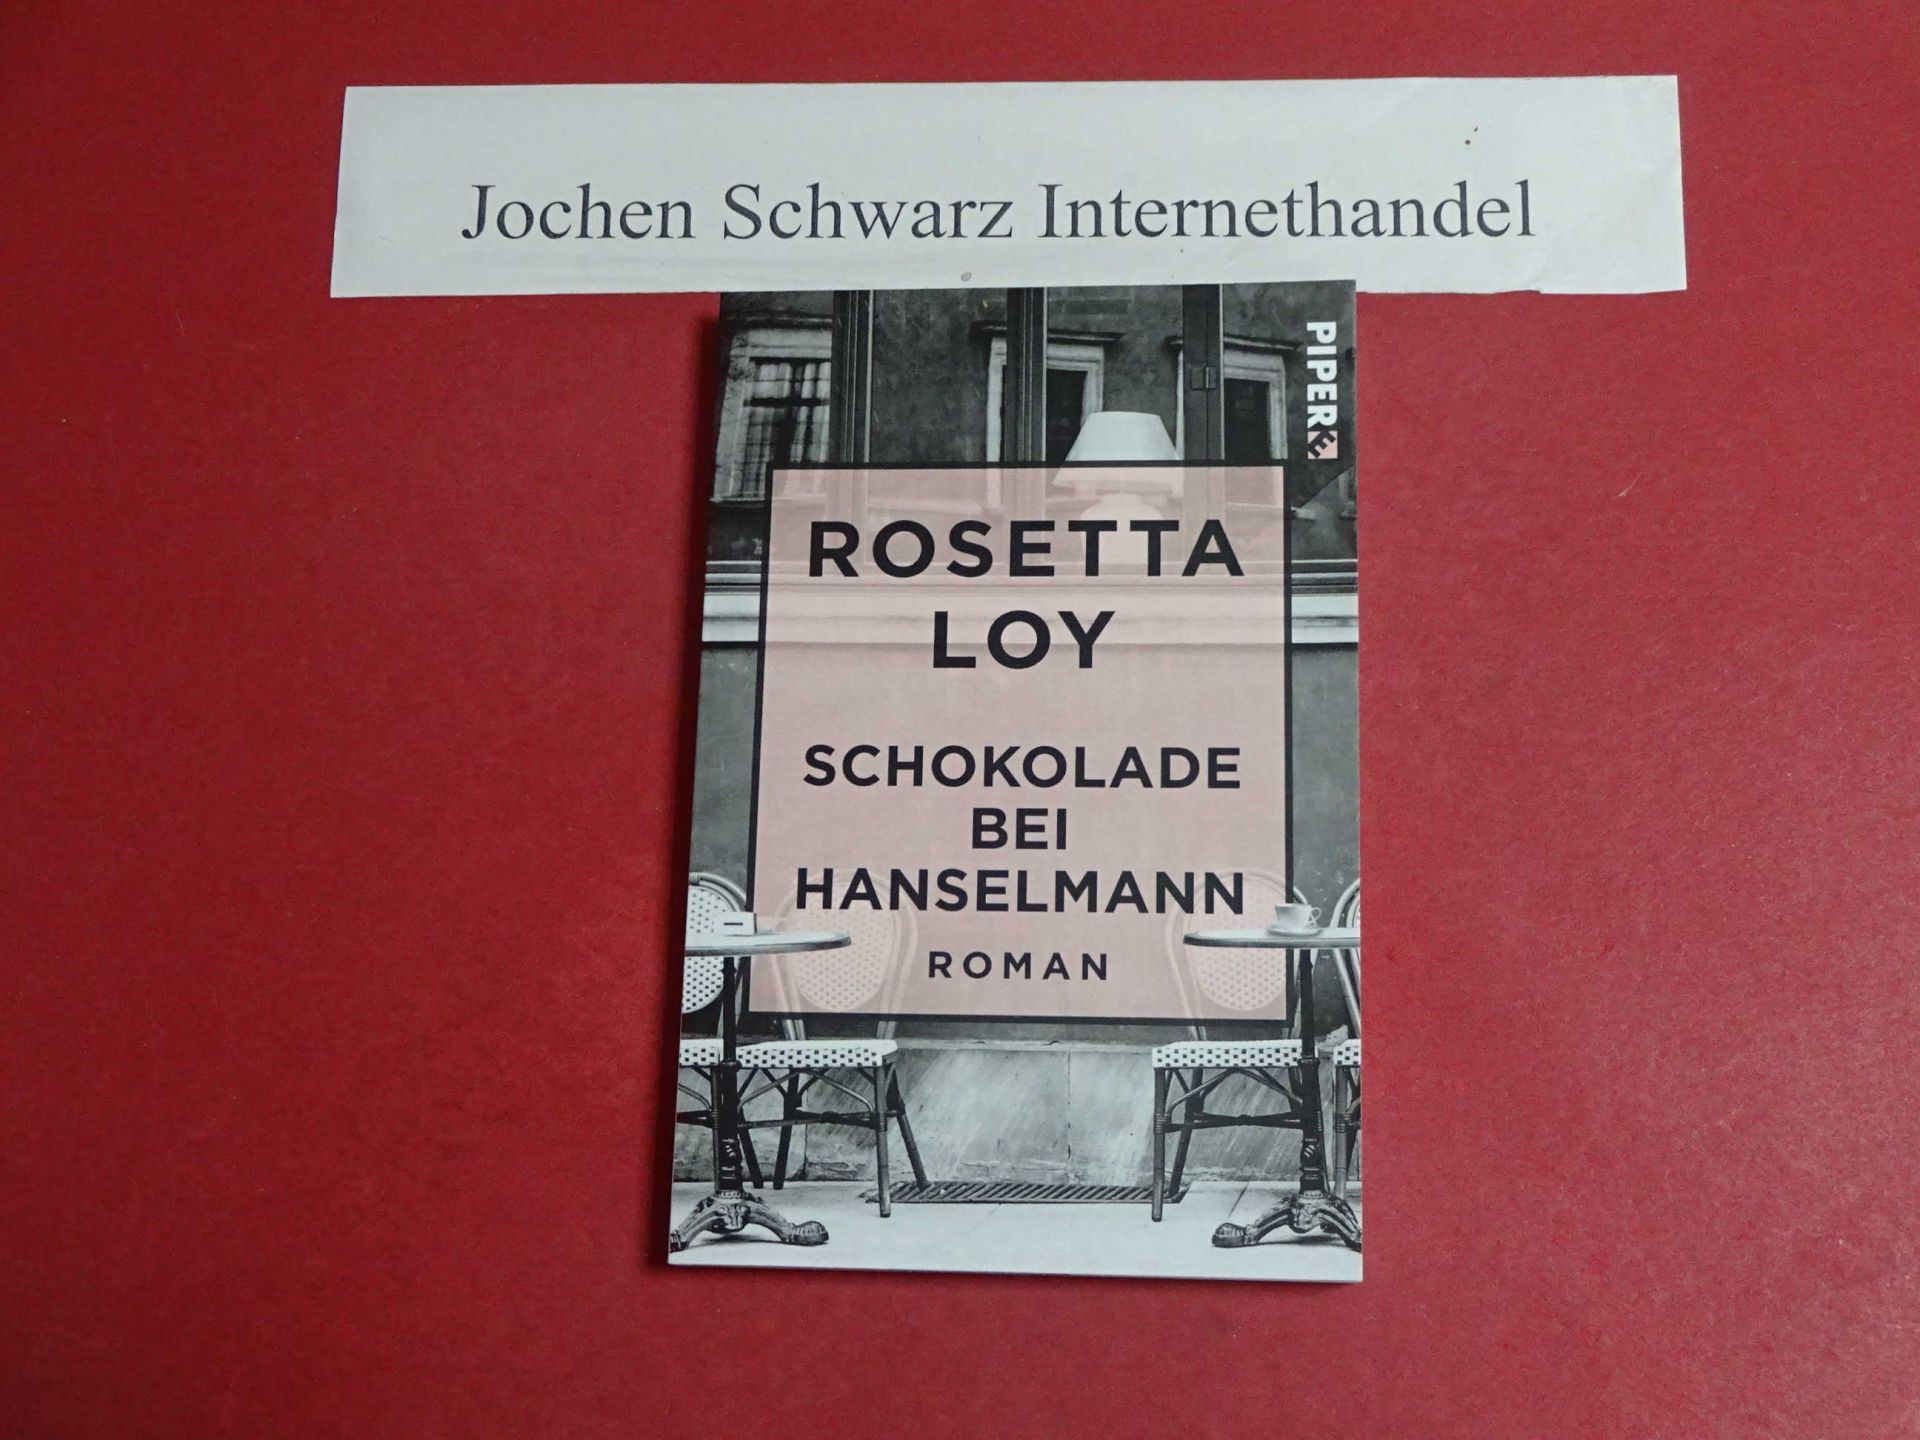 Schokolade bei Hanselmann - Loy, Rosetta und Maja Pflug